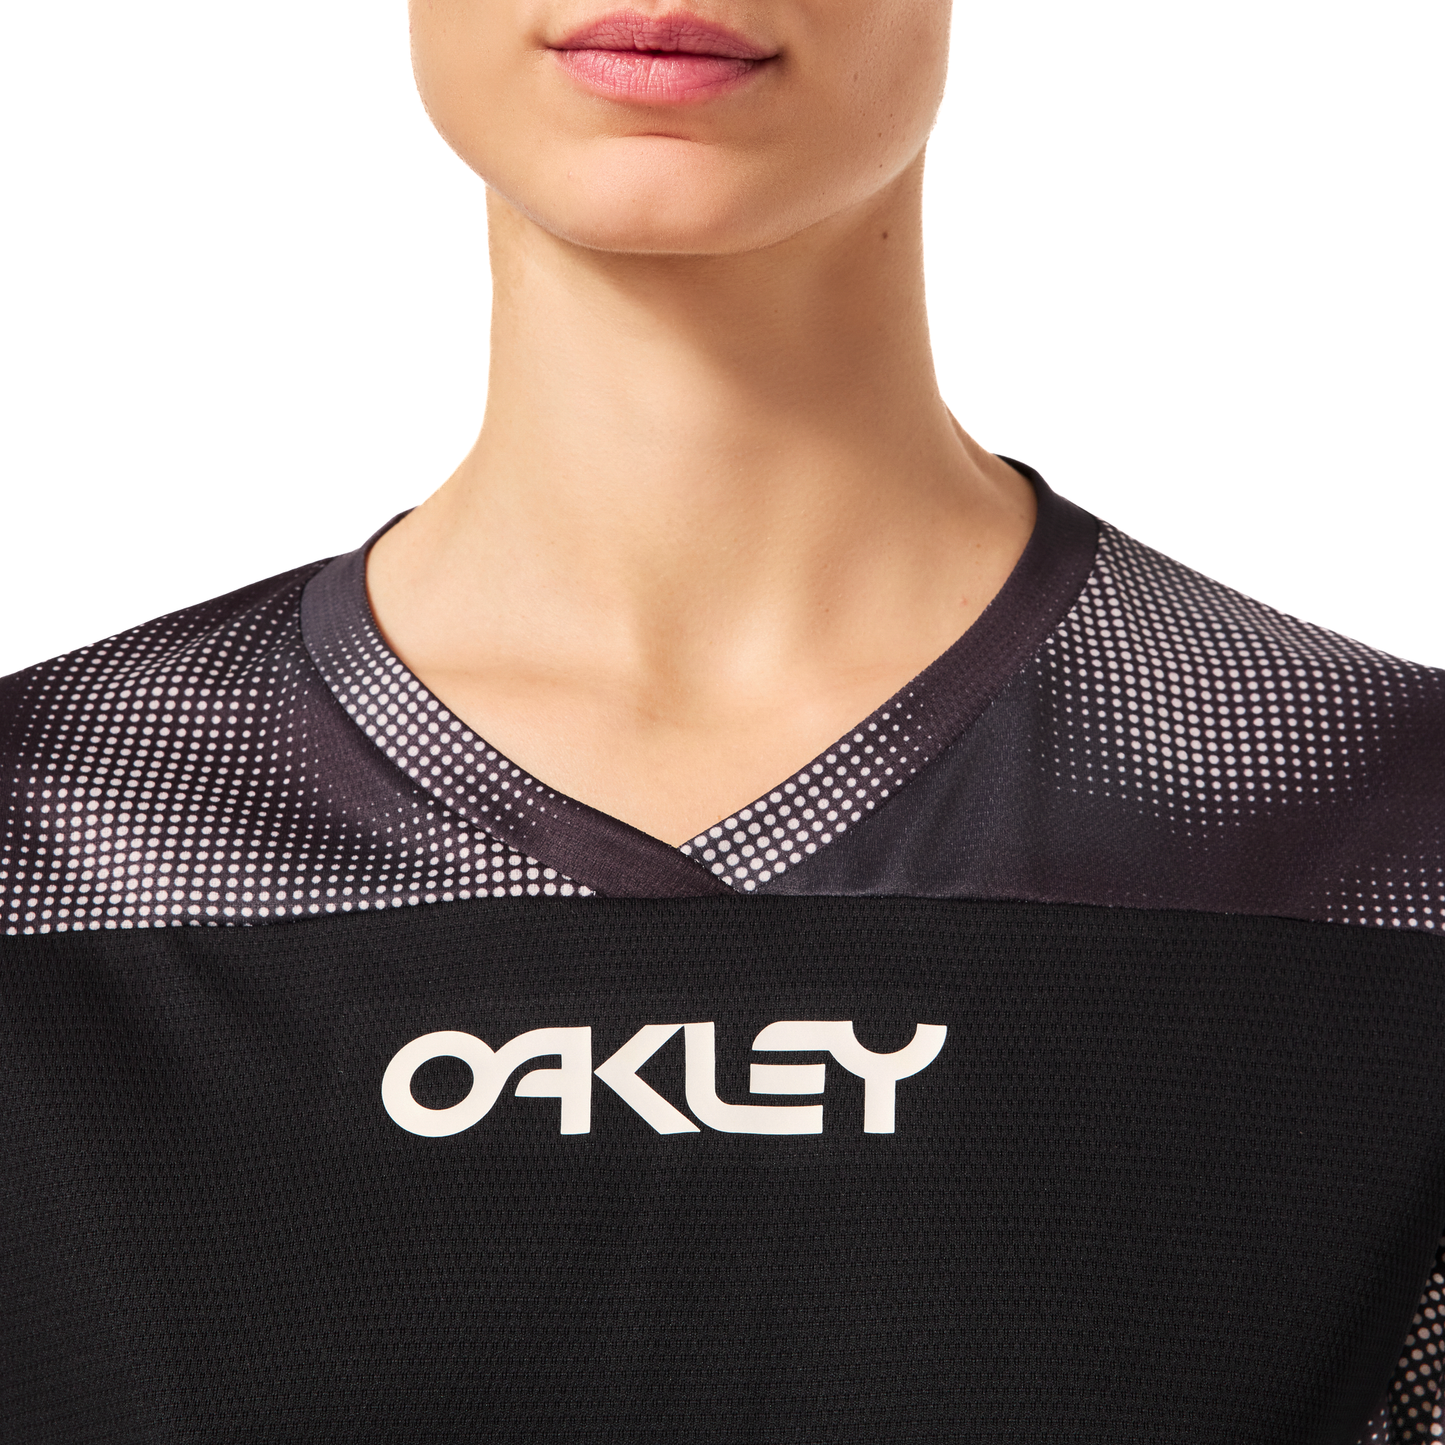 Oakley Women's Maven Coast Long Sleeve Jersey - Women's M - Organic Spots Black